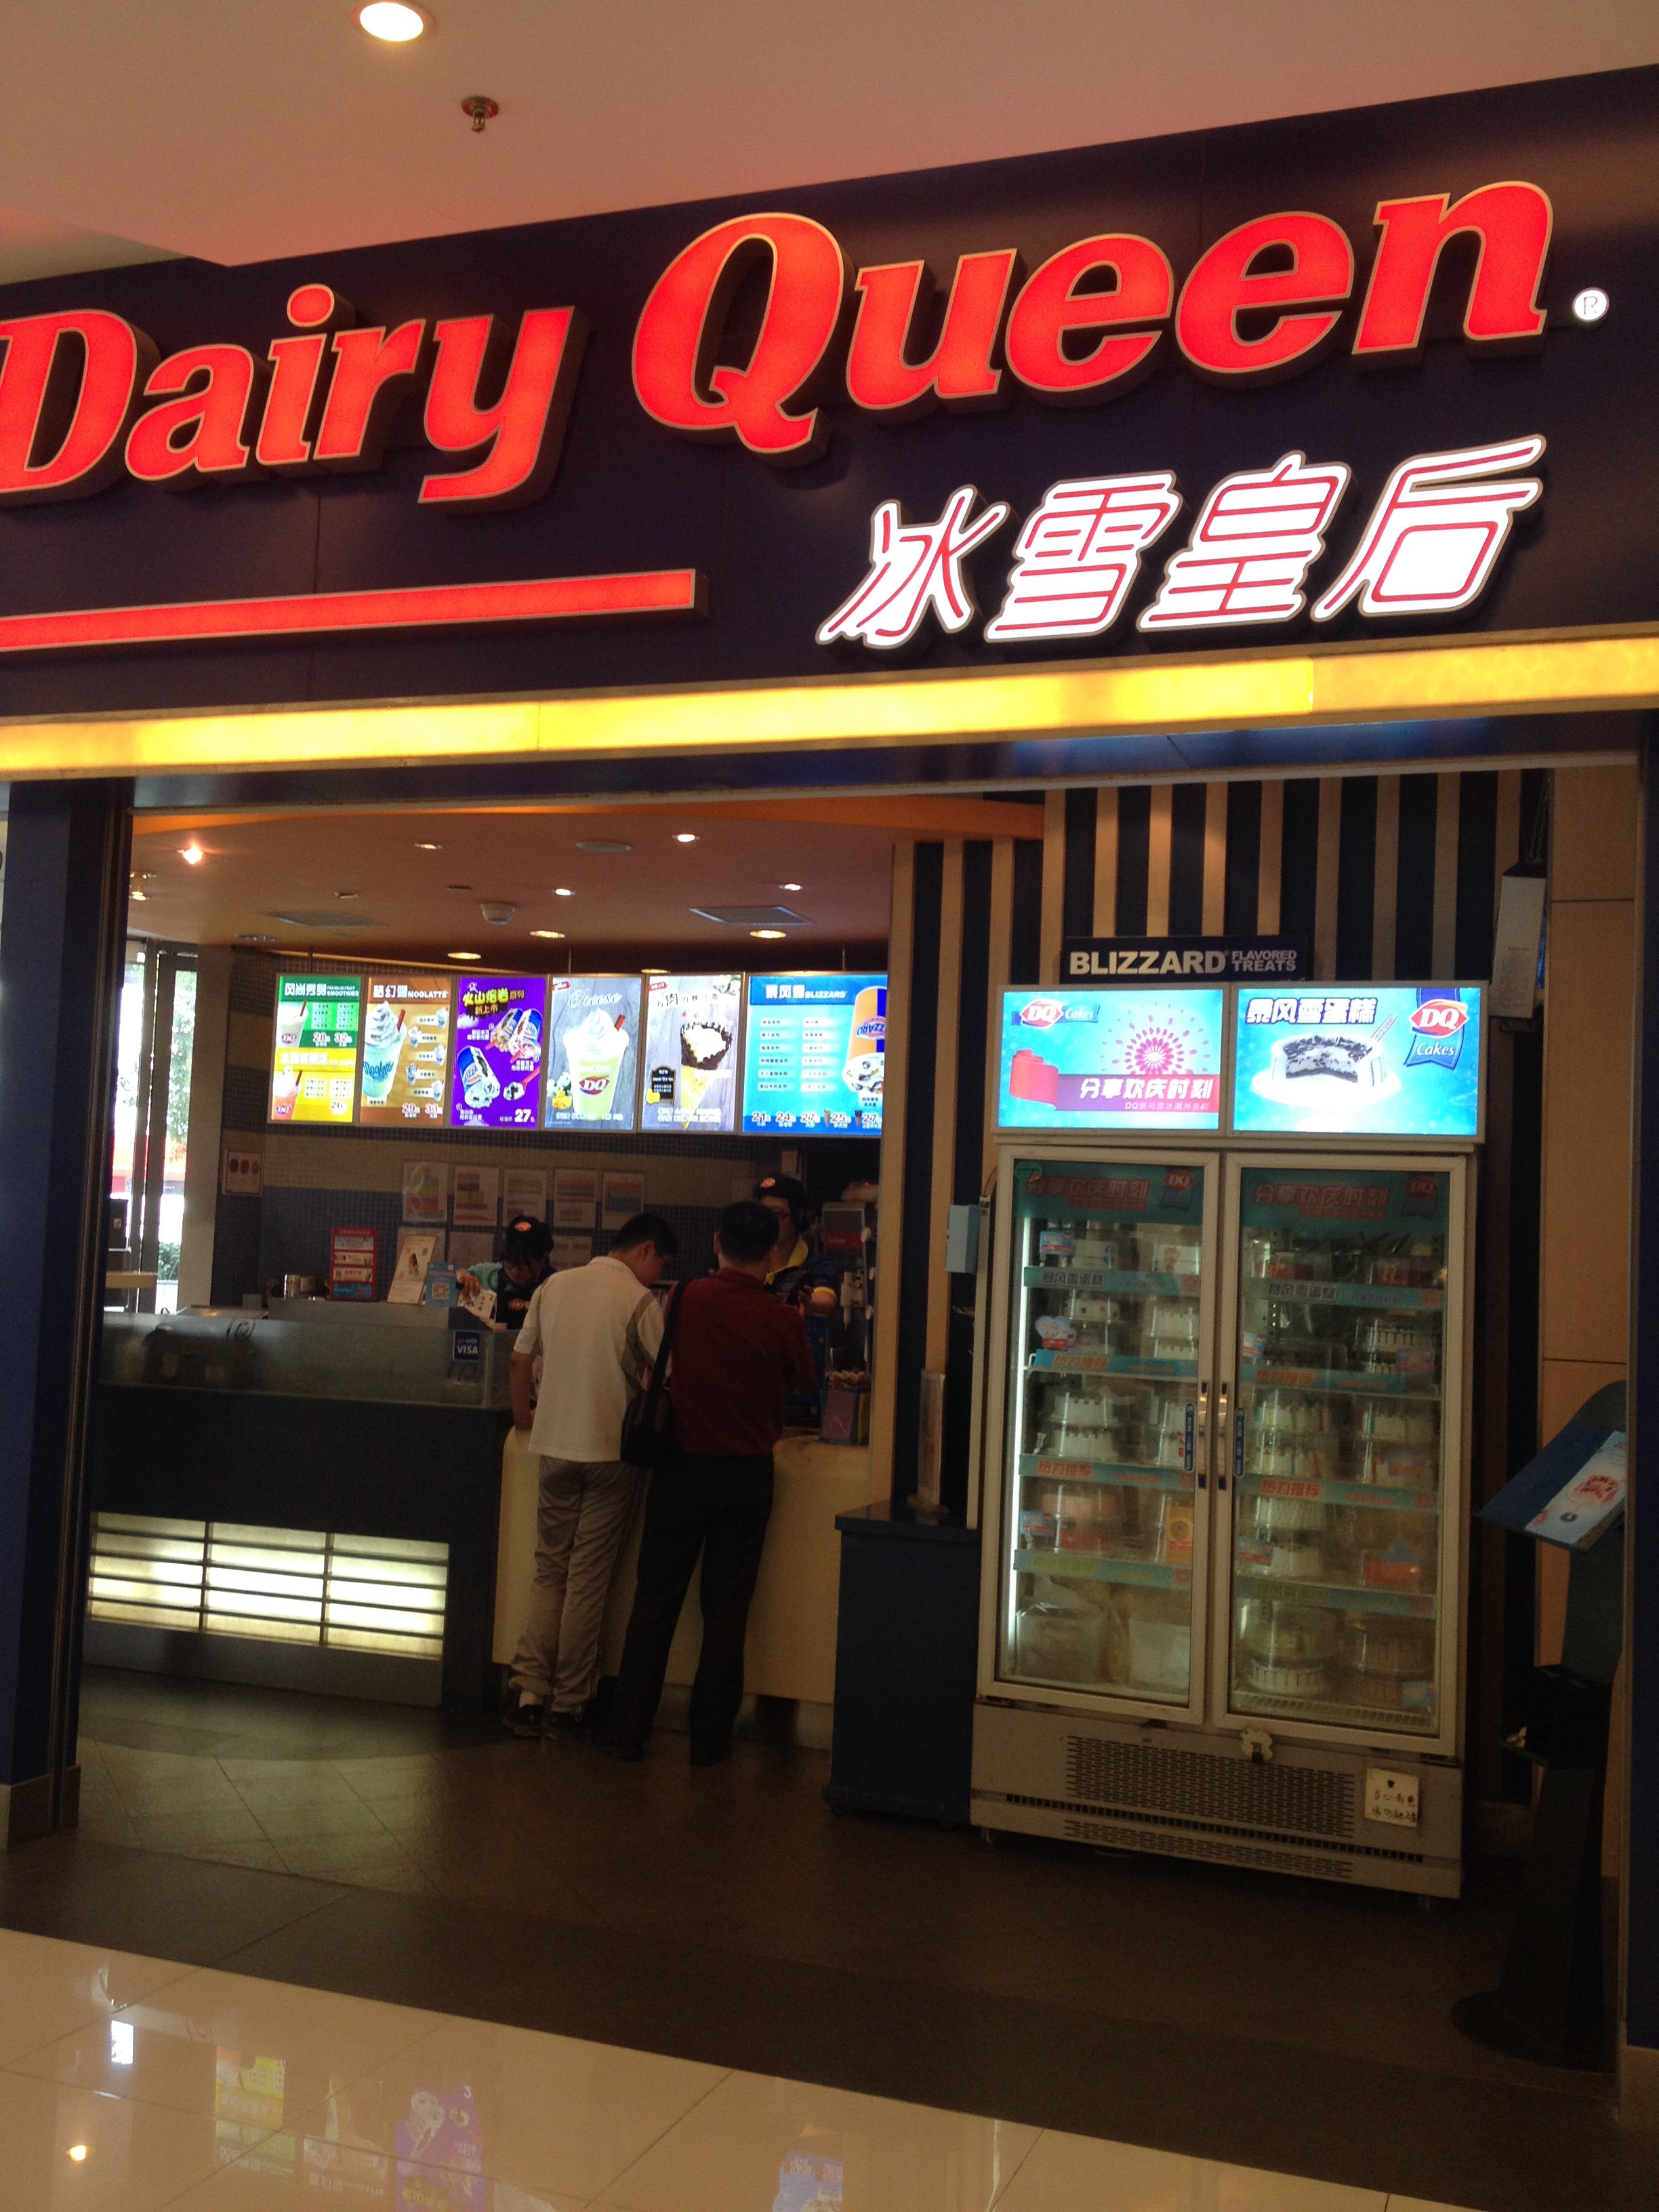 【携程美食林】上海dq(金桥店)餐馆,这家店的冰淇淋也很好吃,在金桥